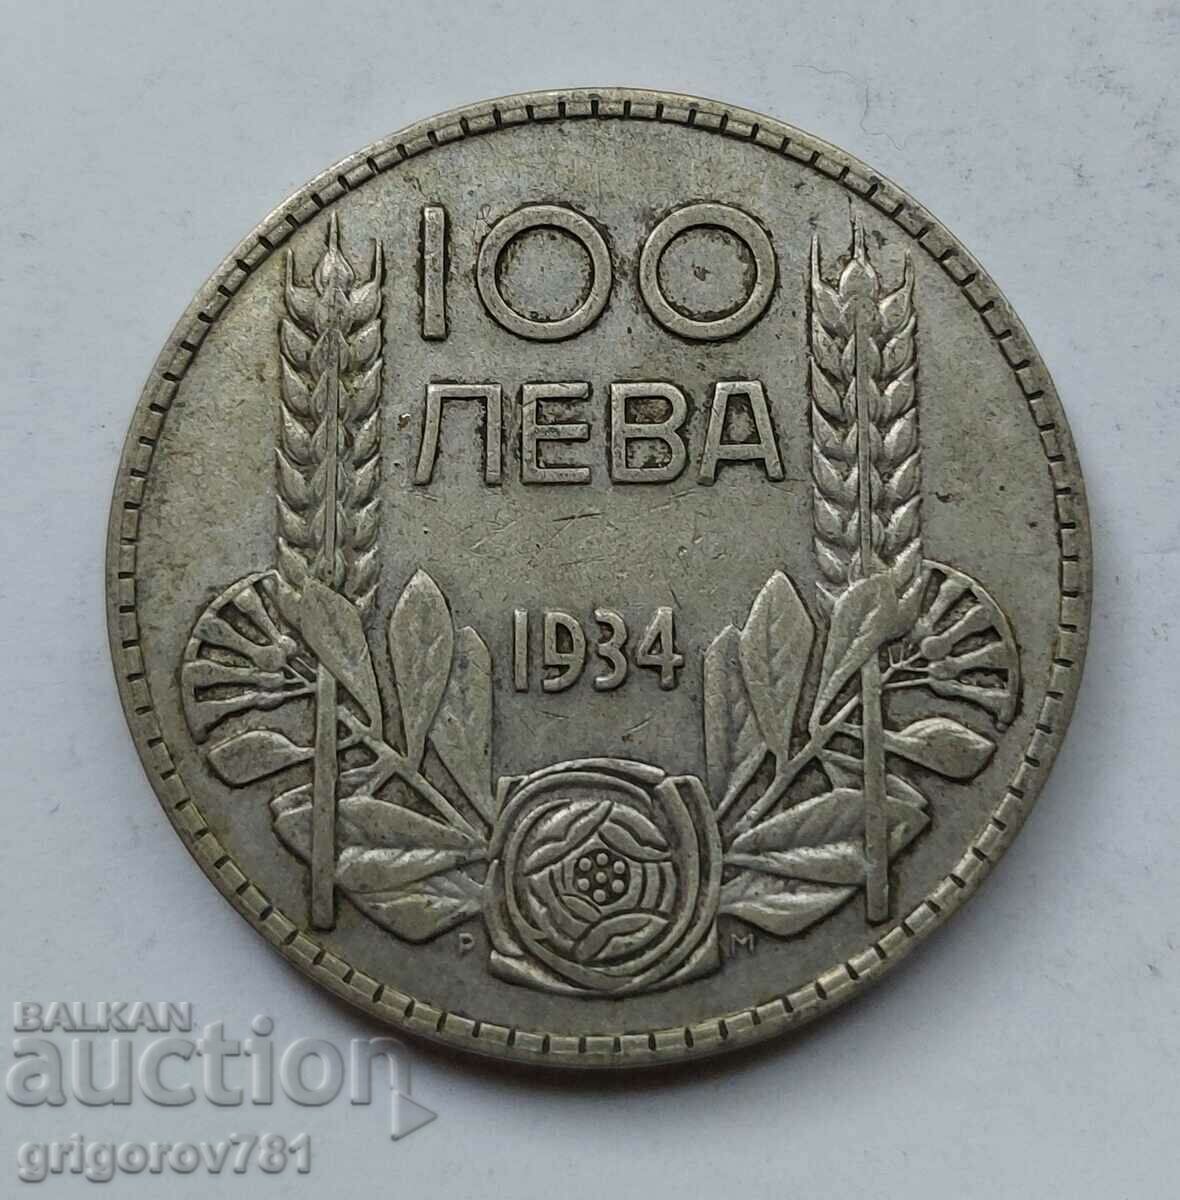 Ασήμι 100 λέβα Βουλγαρία 1934 - ασημένιο νόμισμα #68